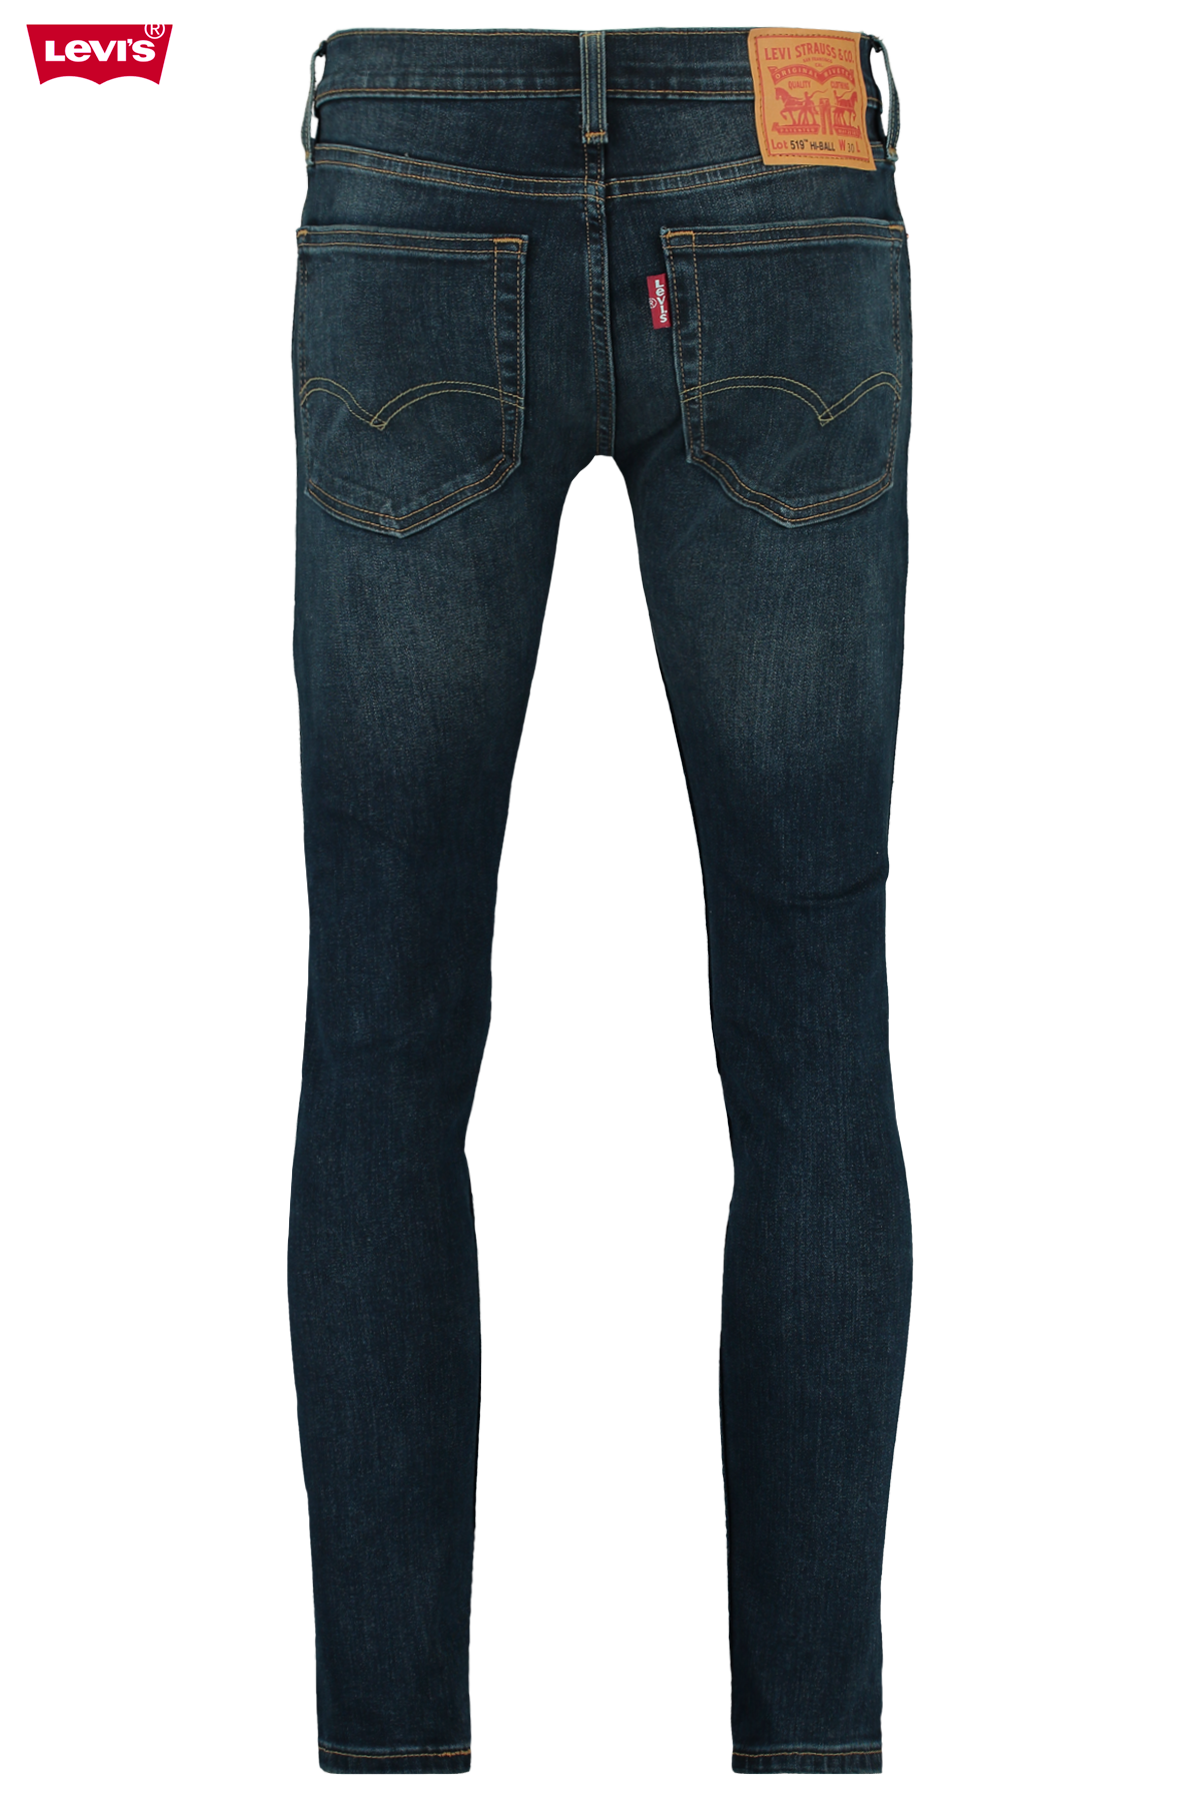 levi's 519 jeans mens